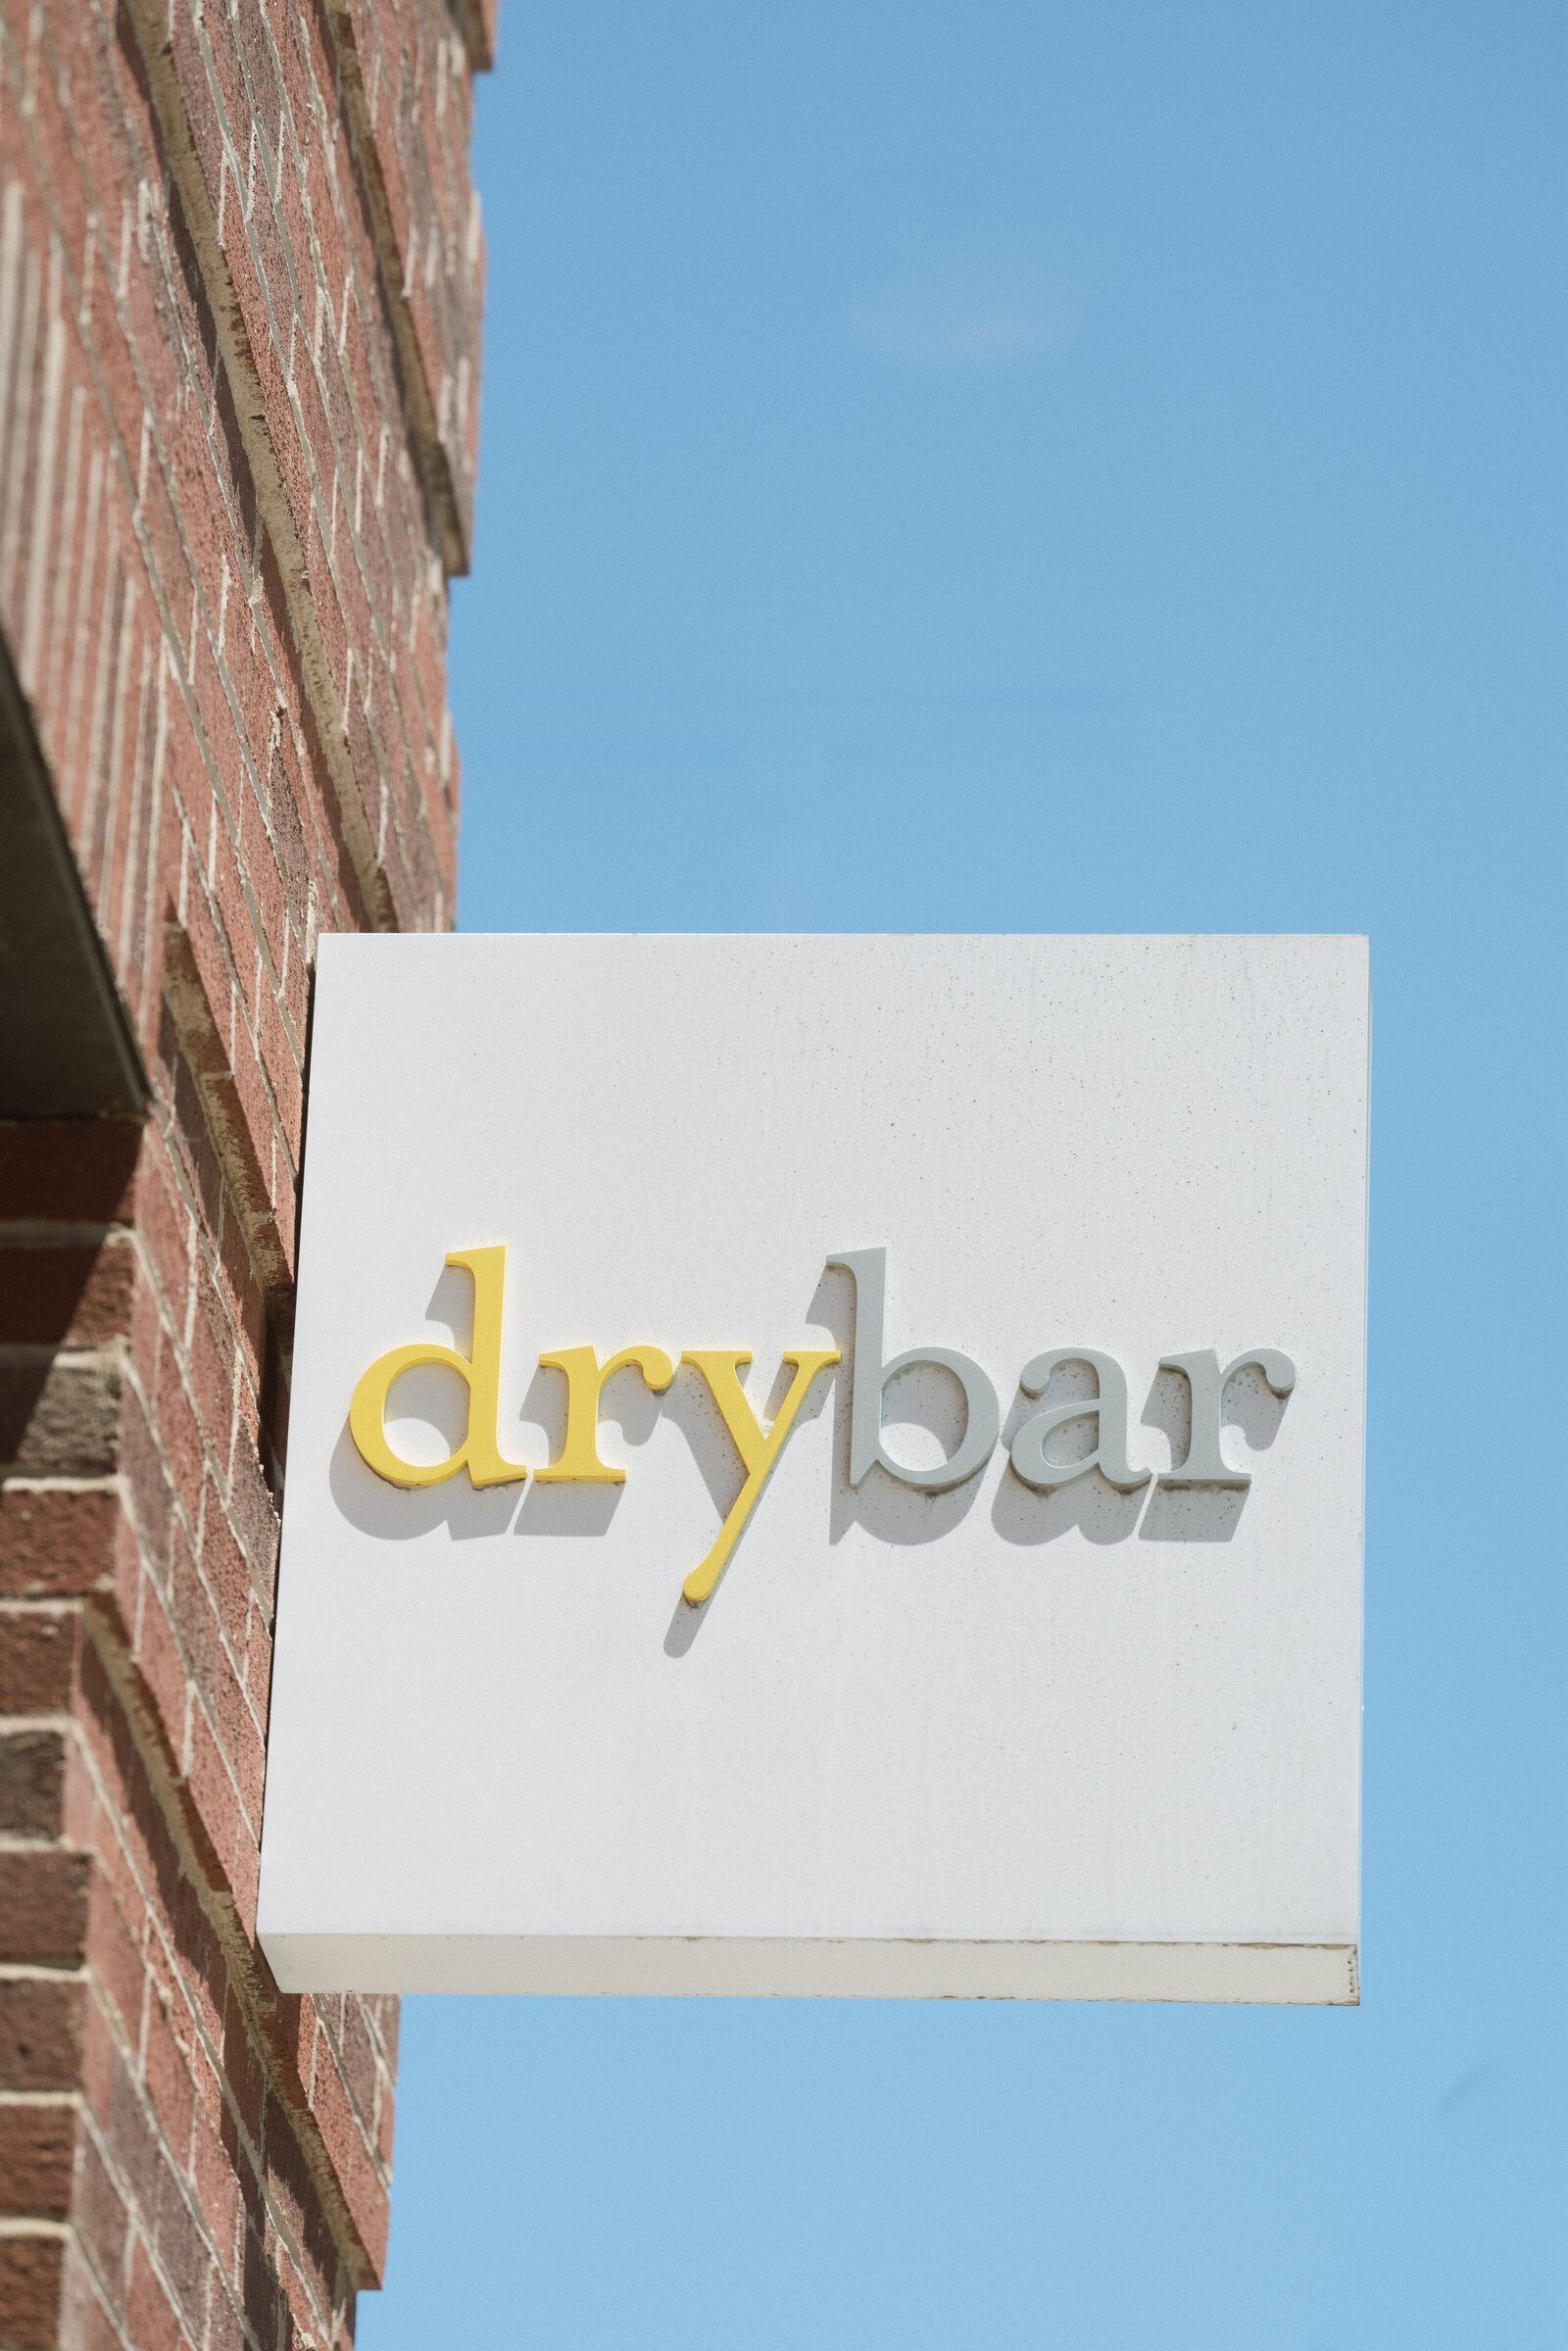 drybar-clt-may-elizabeth-sellers-photo-10